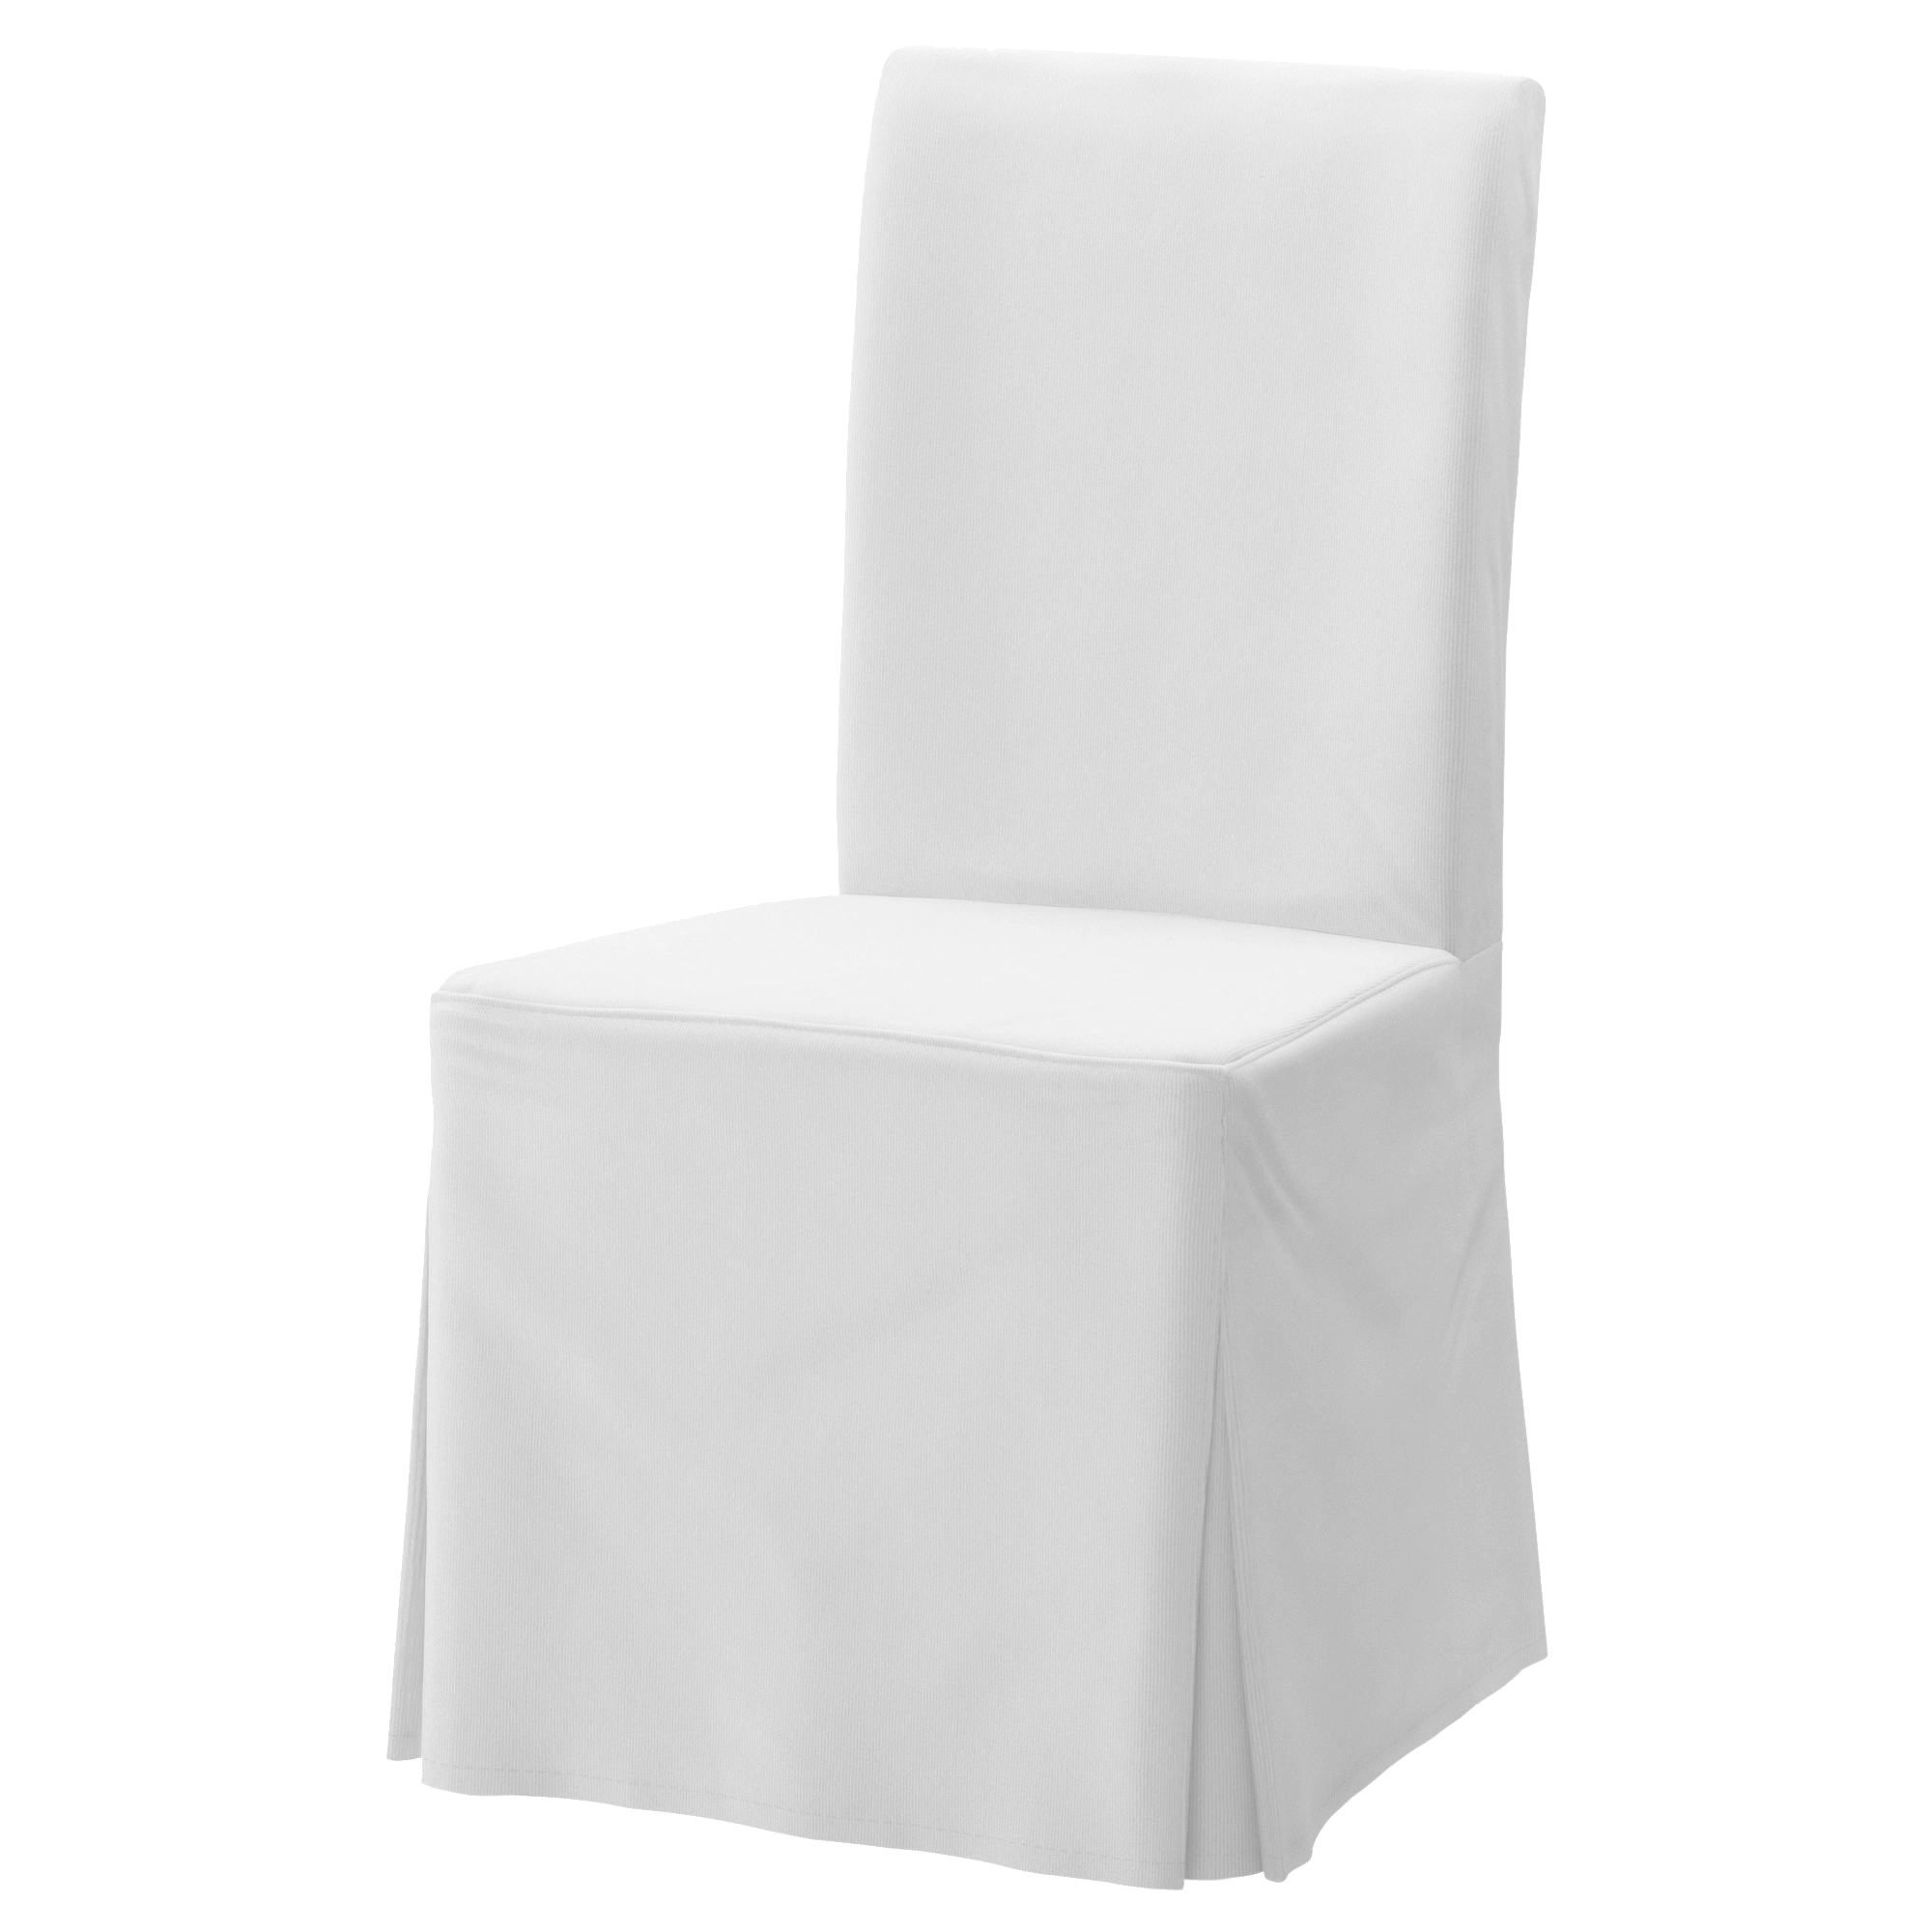 White premium cotton cotton chair cover